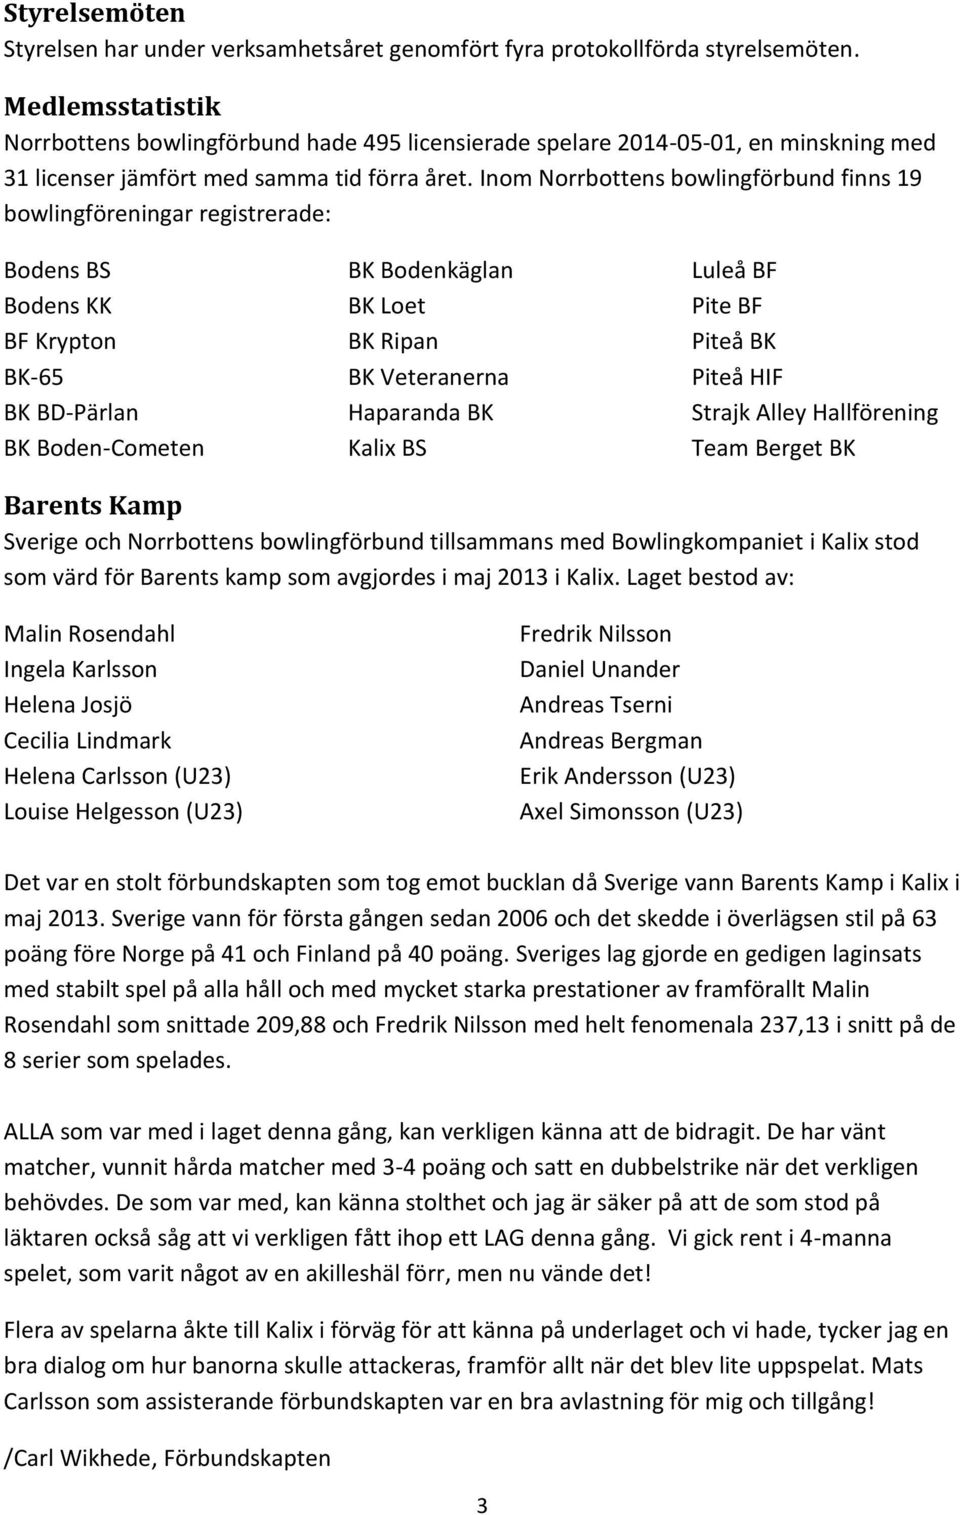 Inom Norrbottens bowlingförbund finns 19 bowlingföreningar registrerade: Bodens BS Bodens KK BF Krypton BK-65 BK BD-Pärlan BK Boden-Cometen BK Bodenkäglan BK Loet BK Ripan BK Veteranerna Haparanda BK